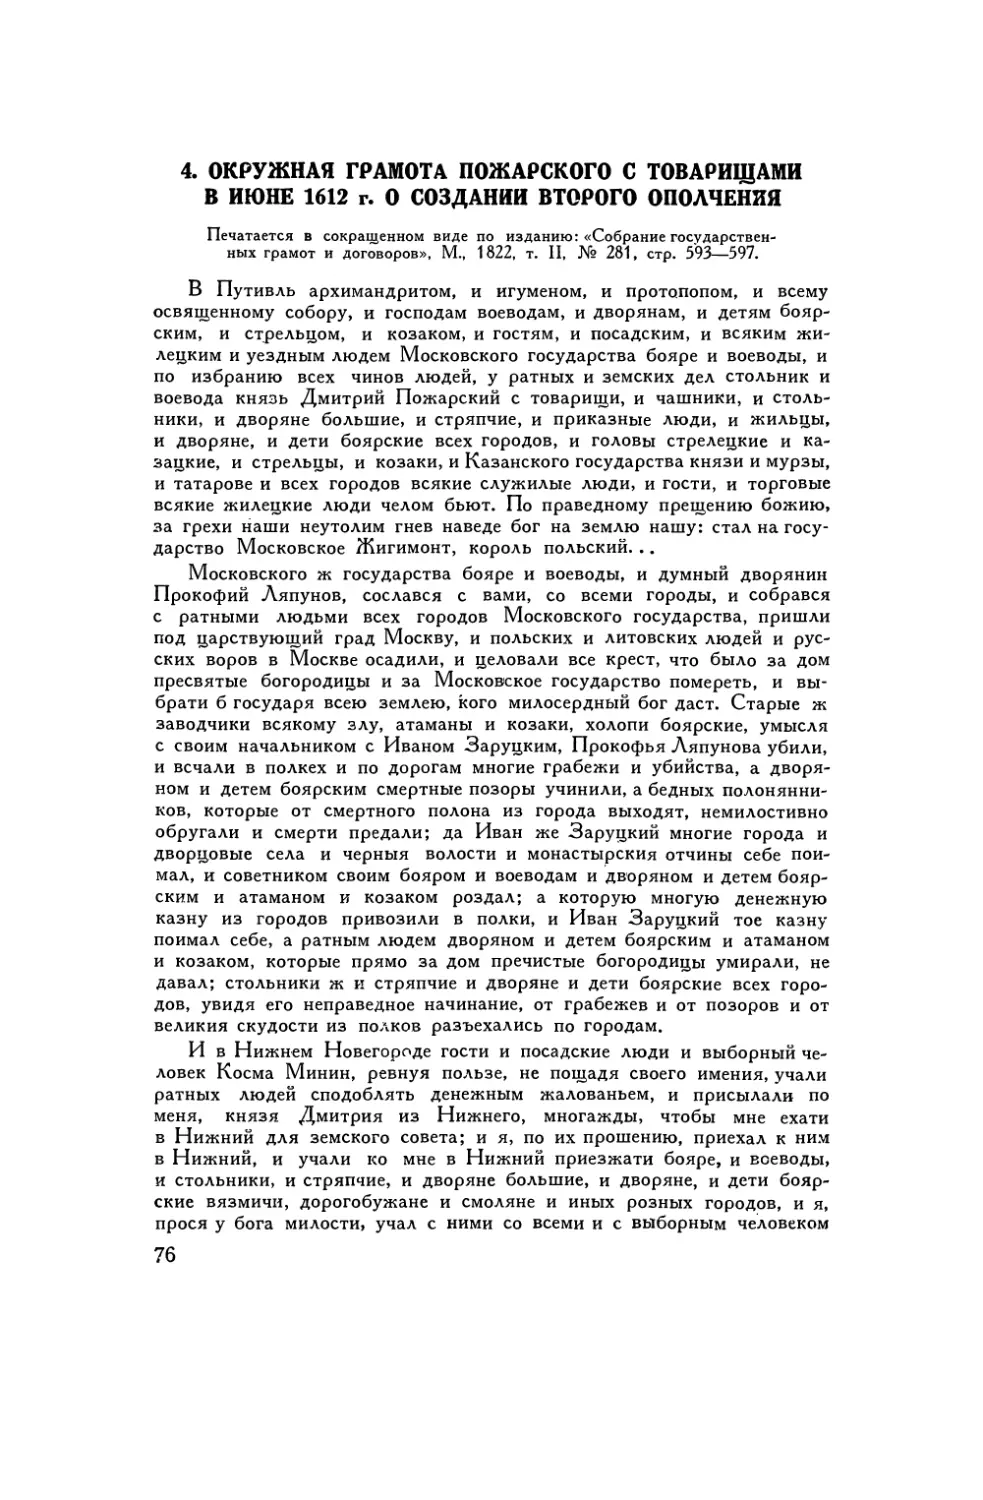 4. Окружная грамота Пожарского с товарищами в июне 1612г.